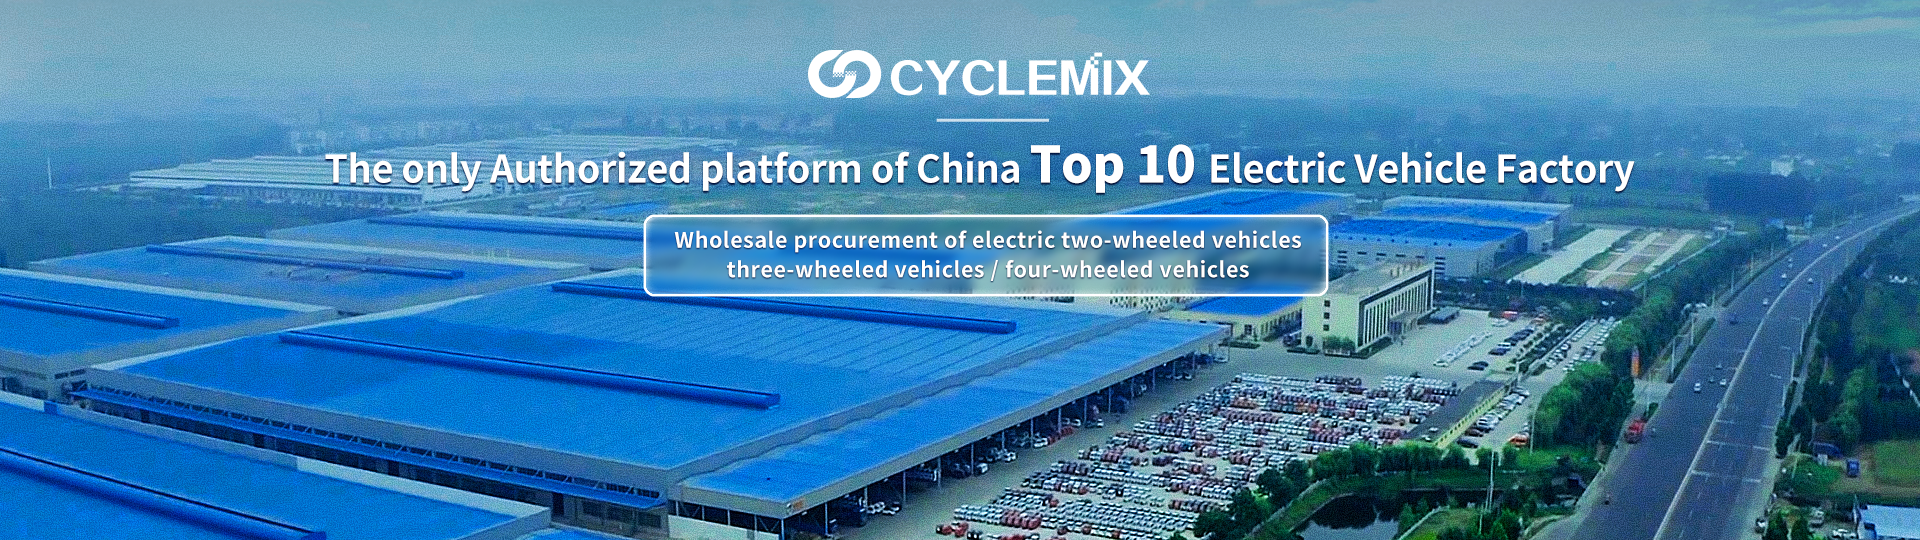 CYCLEMIX La única parte/plataforma autorizada de las 10 principales fábricas de vehículos eléctricos de China